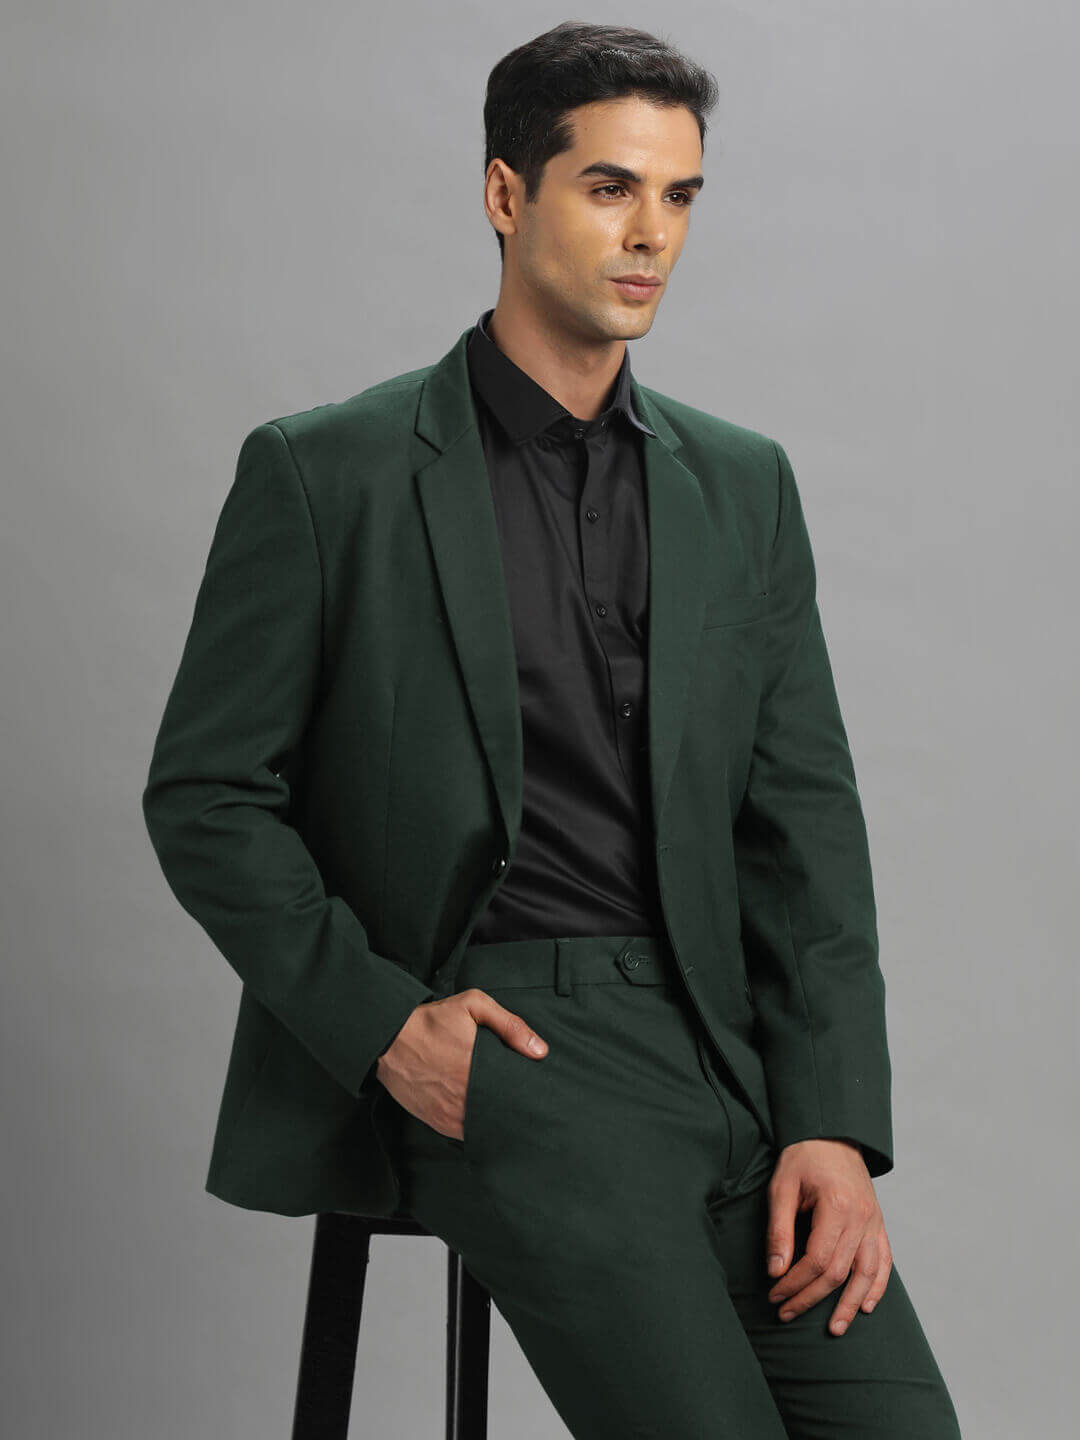 Bottle Green 2pc suit